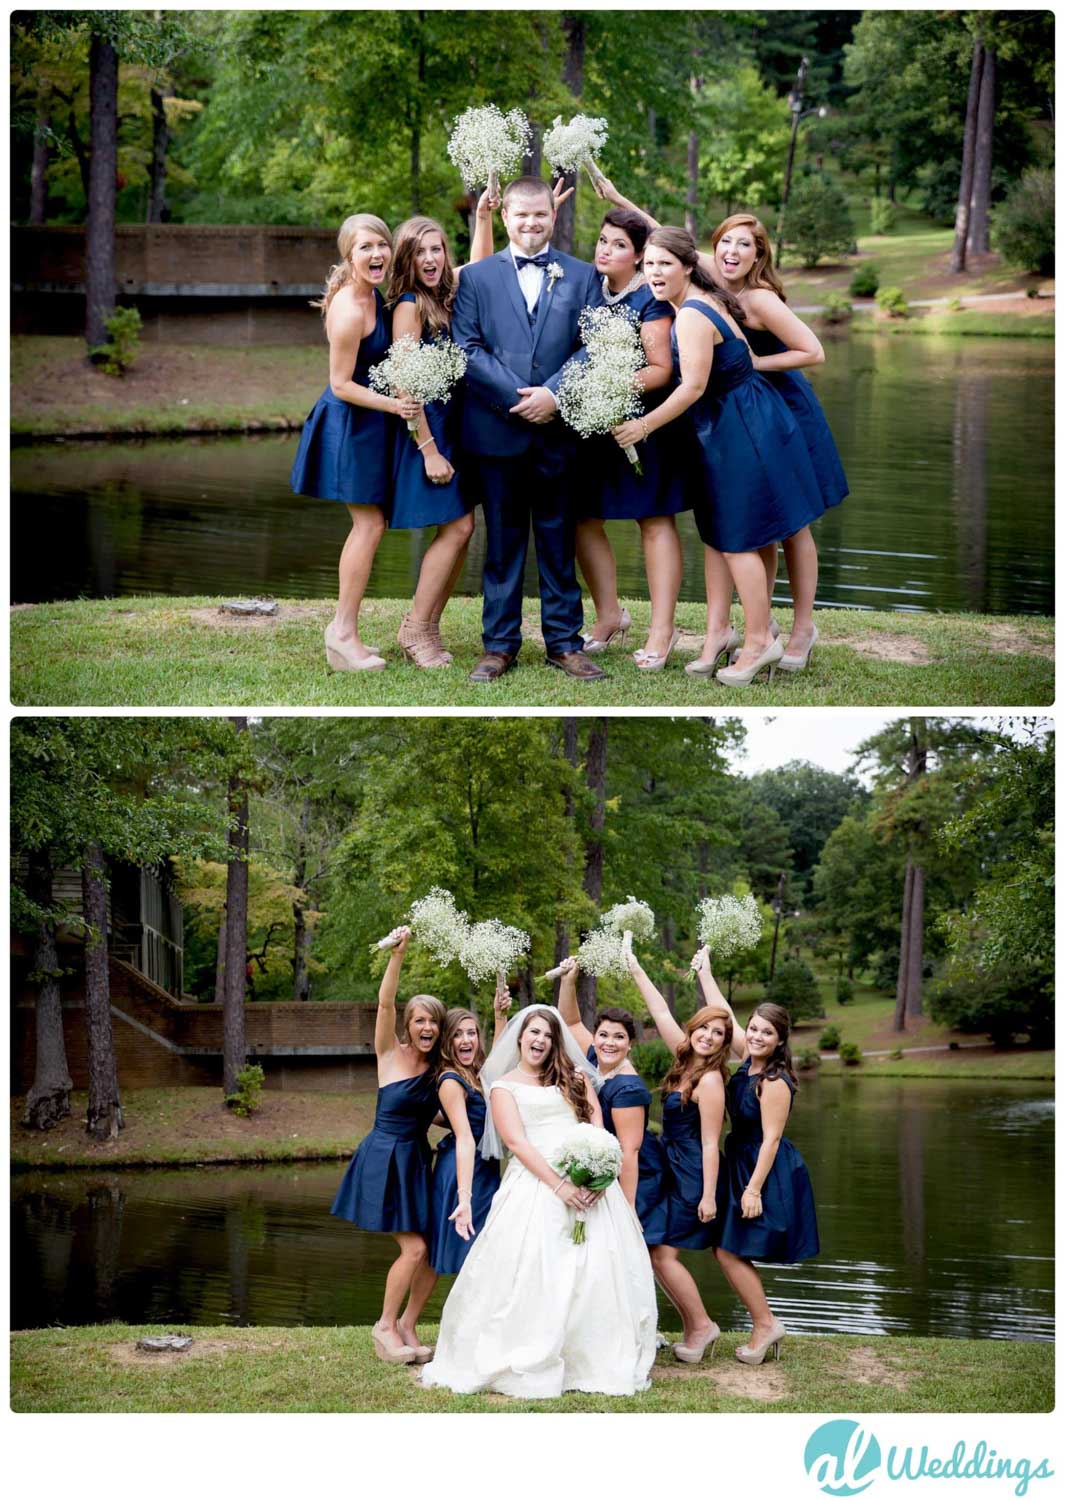 Alabama,Hargis wedding chappel,wedding,wedding party,